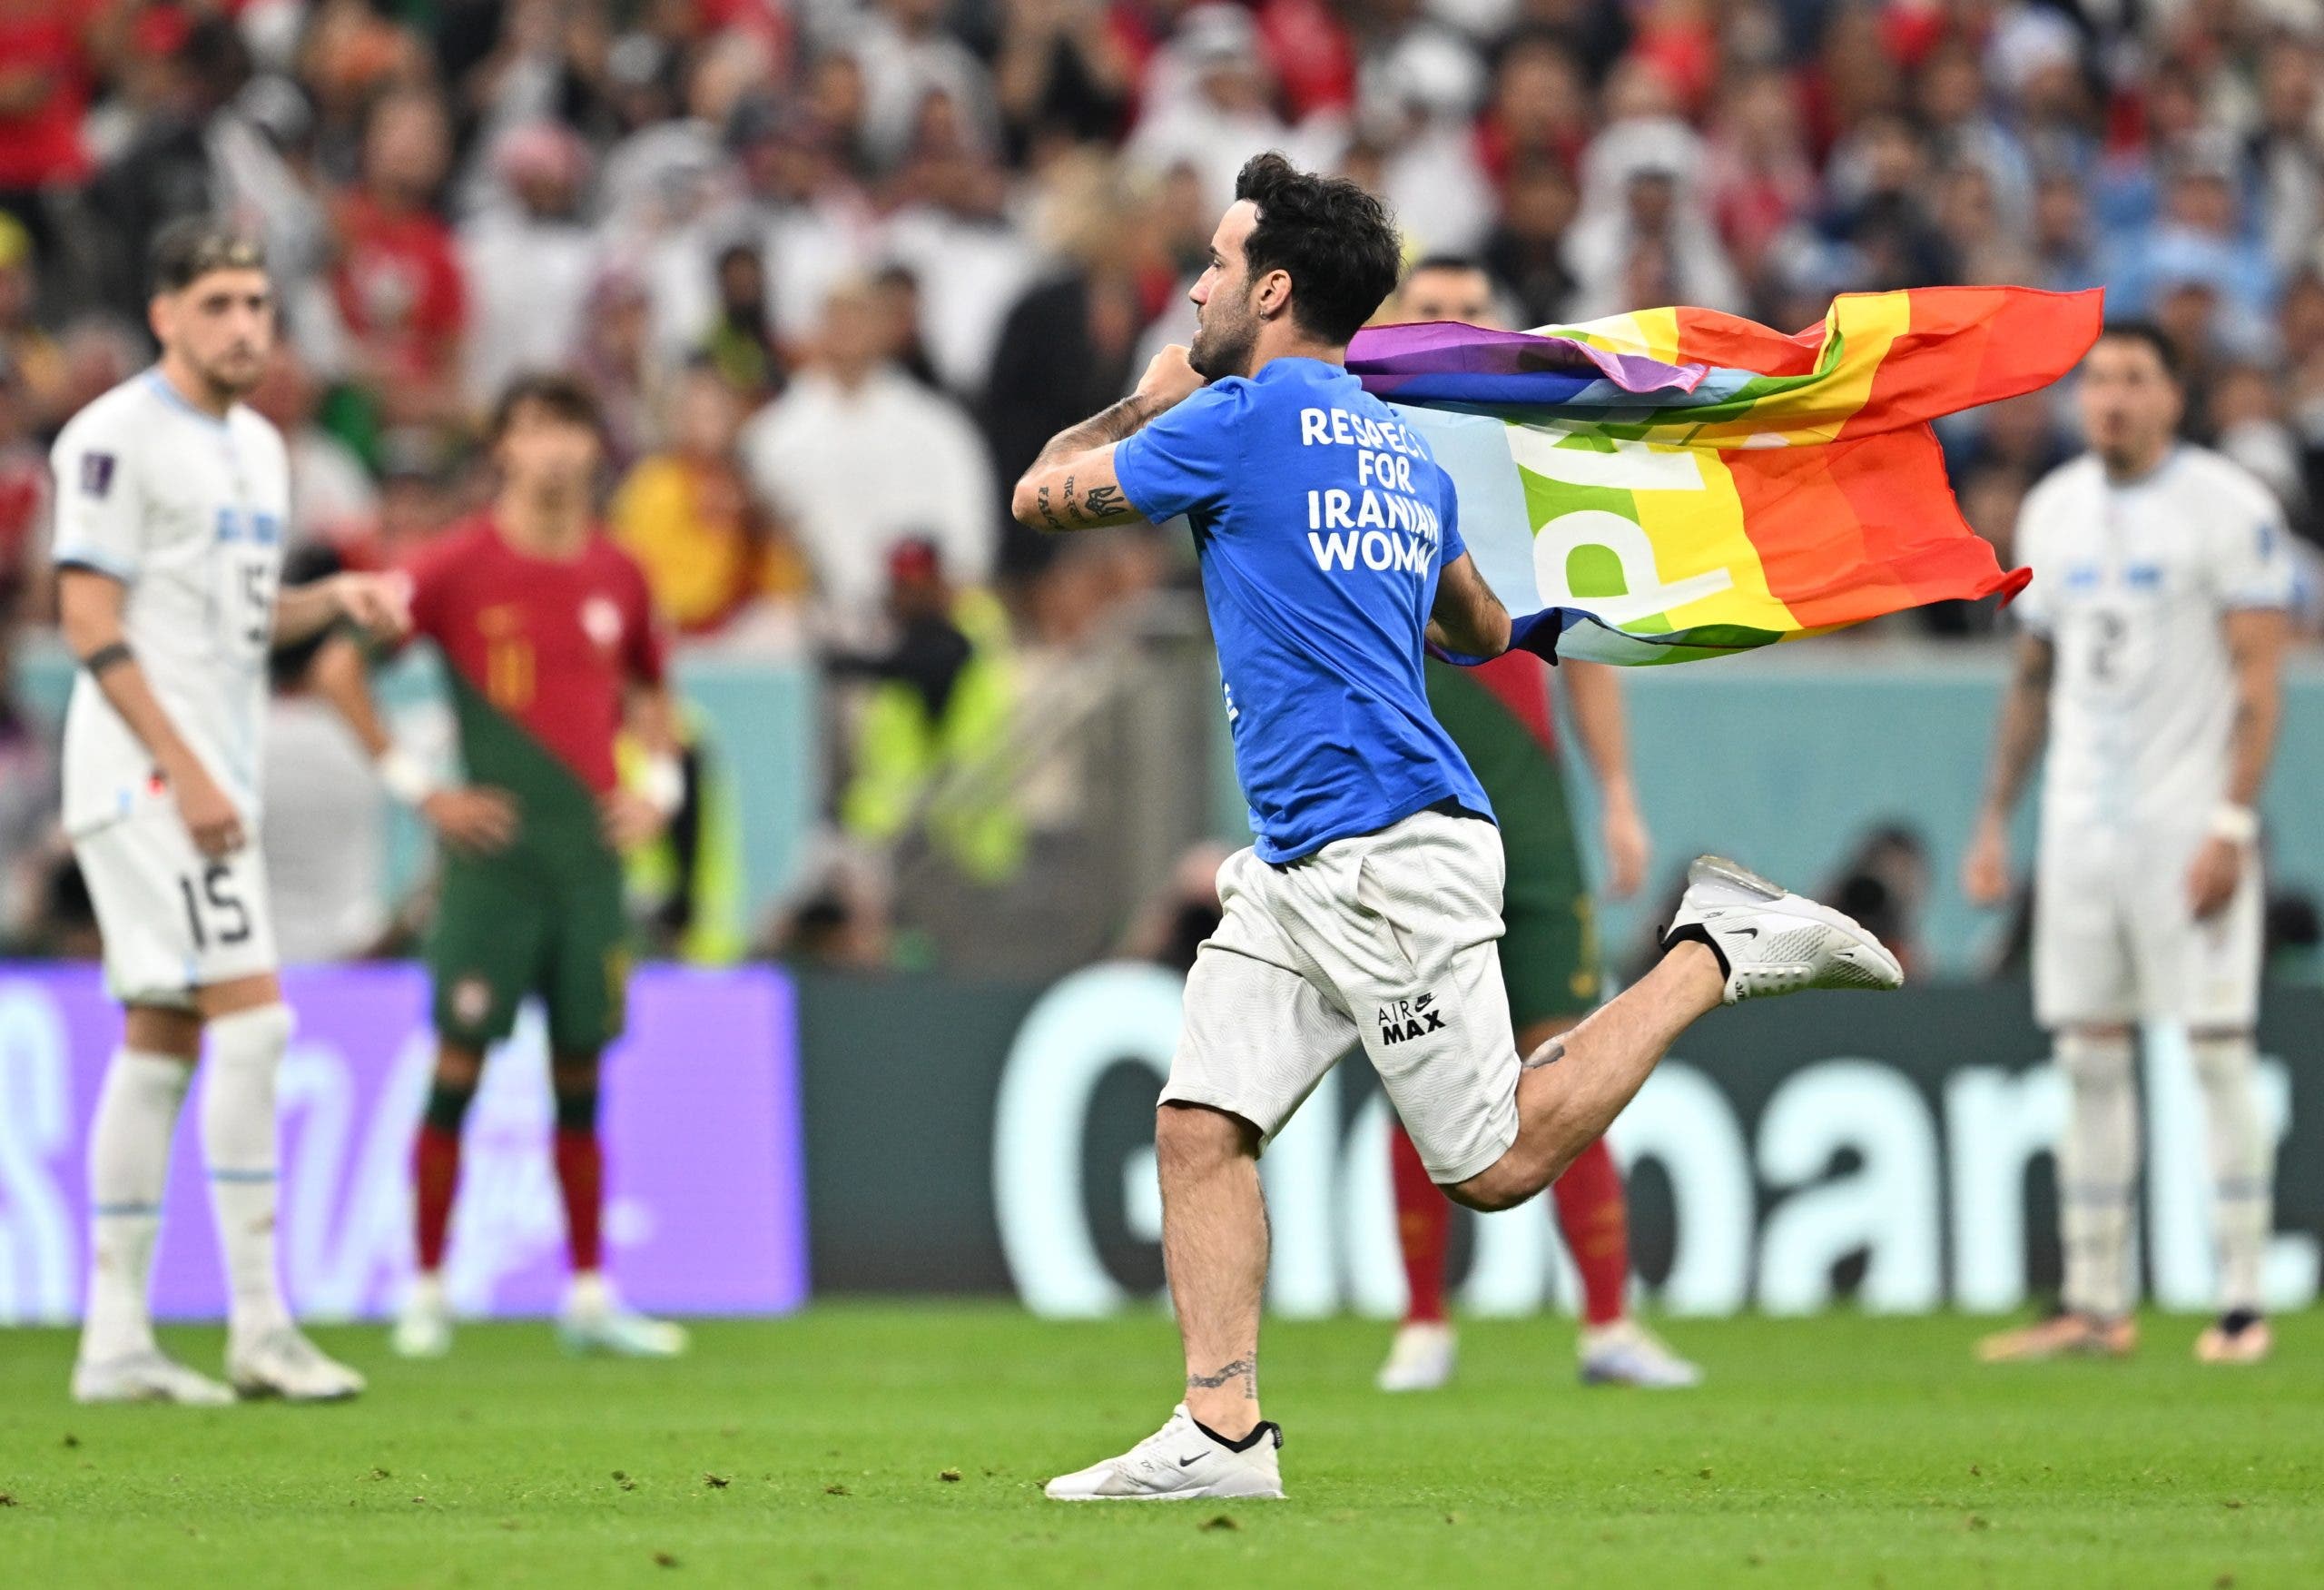 Fan con bandera arcoíris irrumpe en partido del Mundial